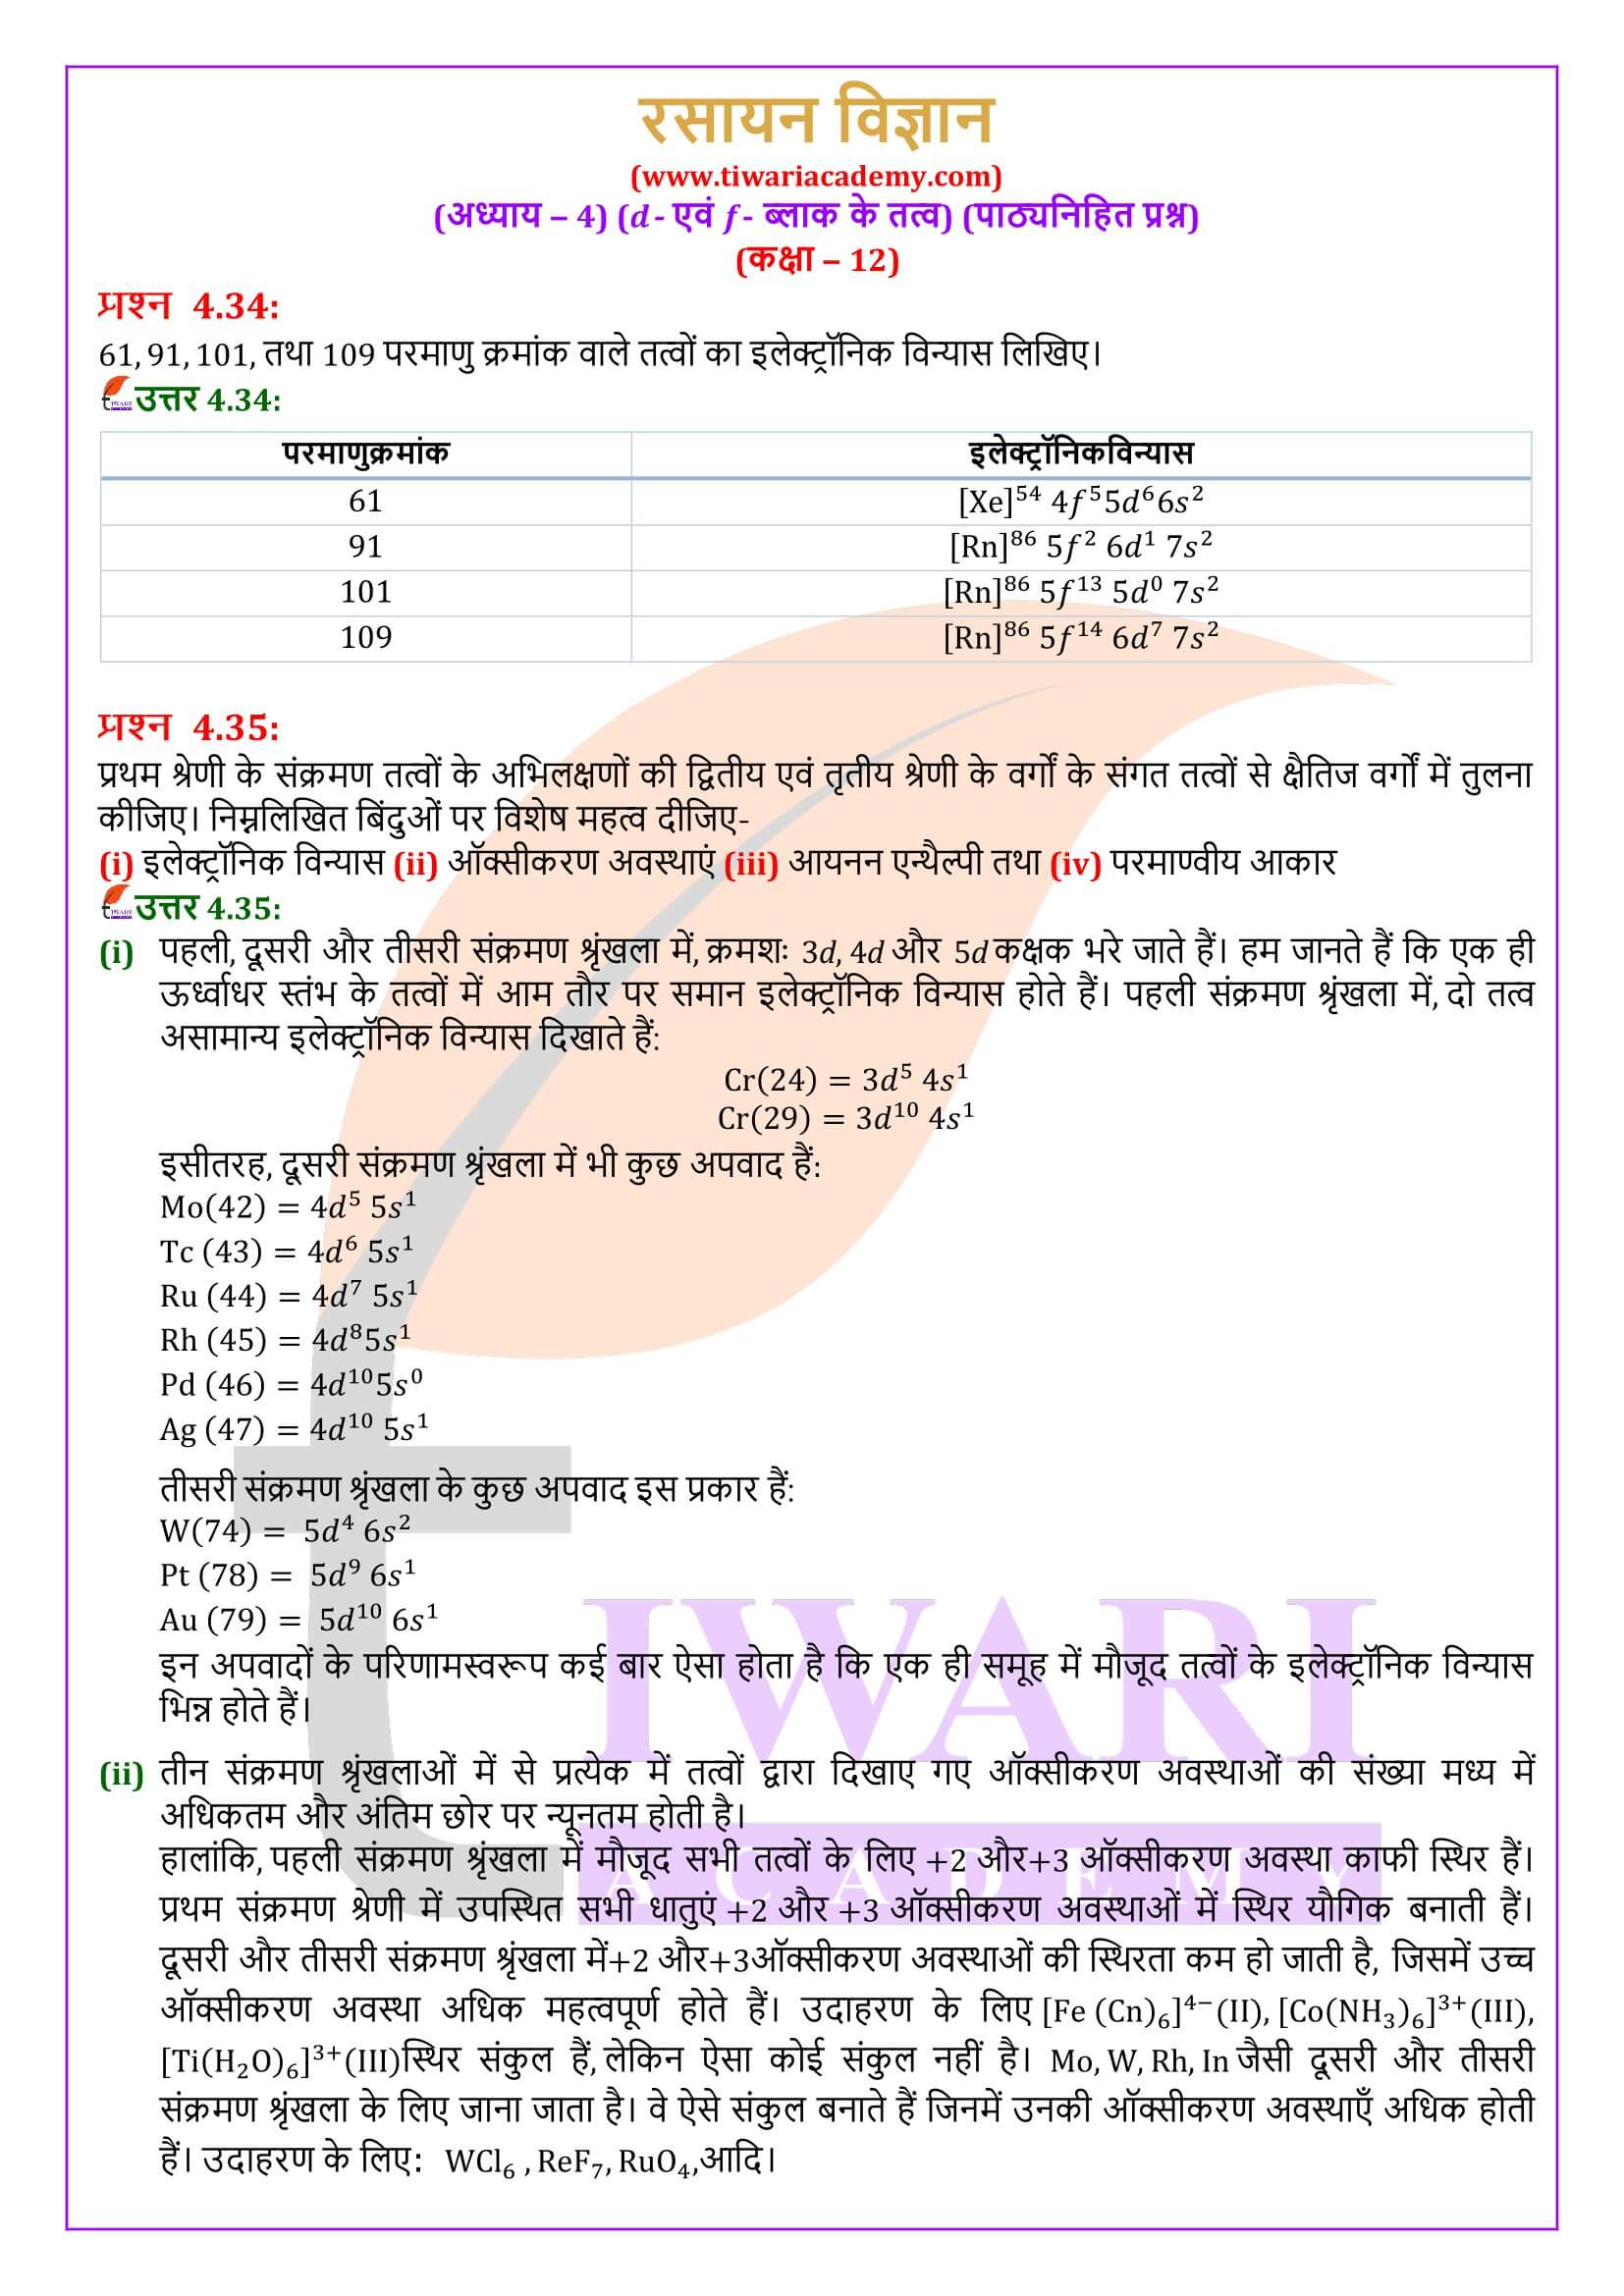 कक्षा 12 रसायन विज्ञान अध्याय 4 सवाल जवाब हिंदी में